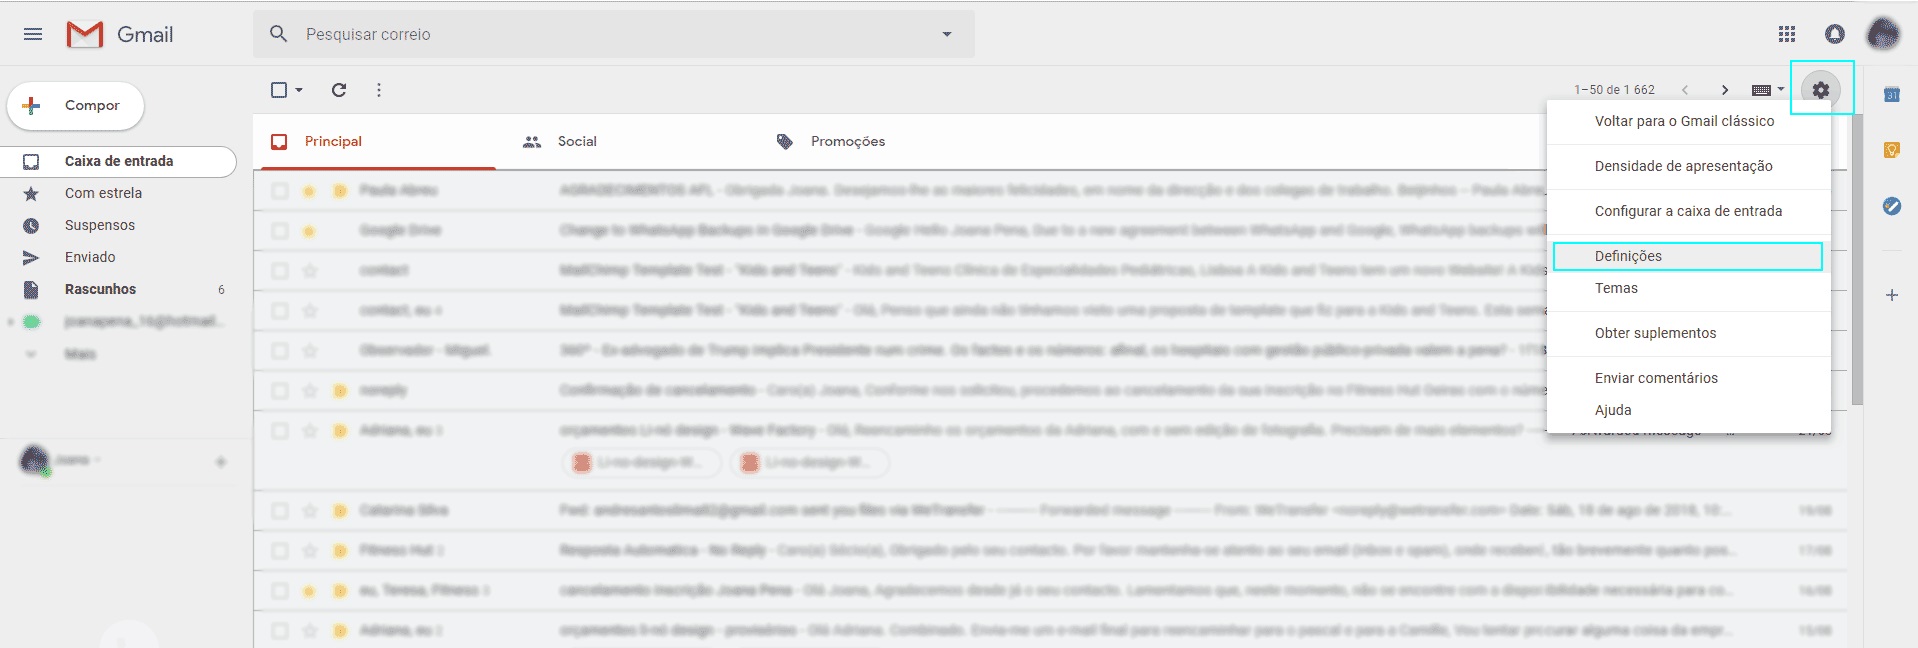 Configurar uma conta de e-mail profissional com Gmail